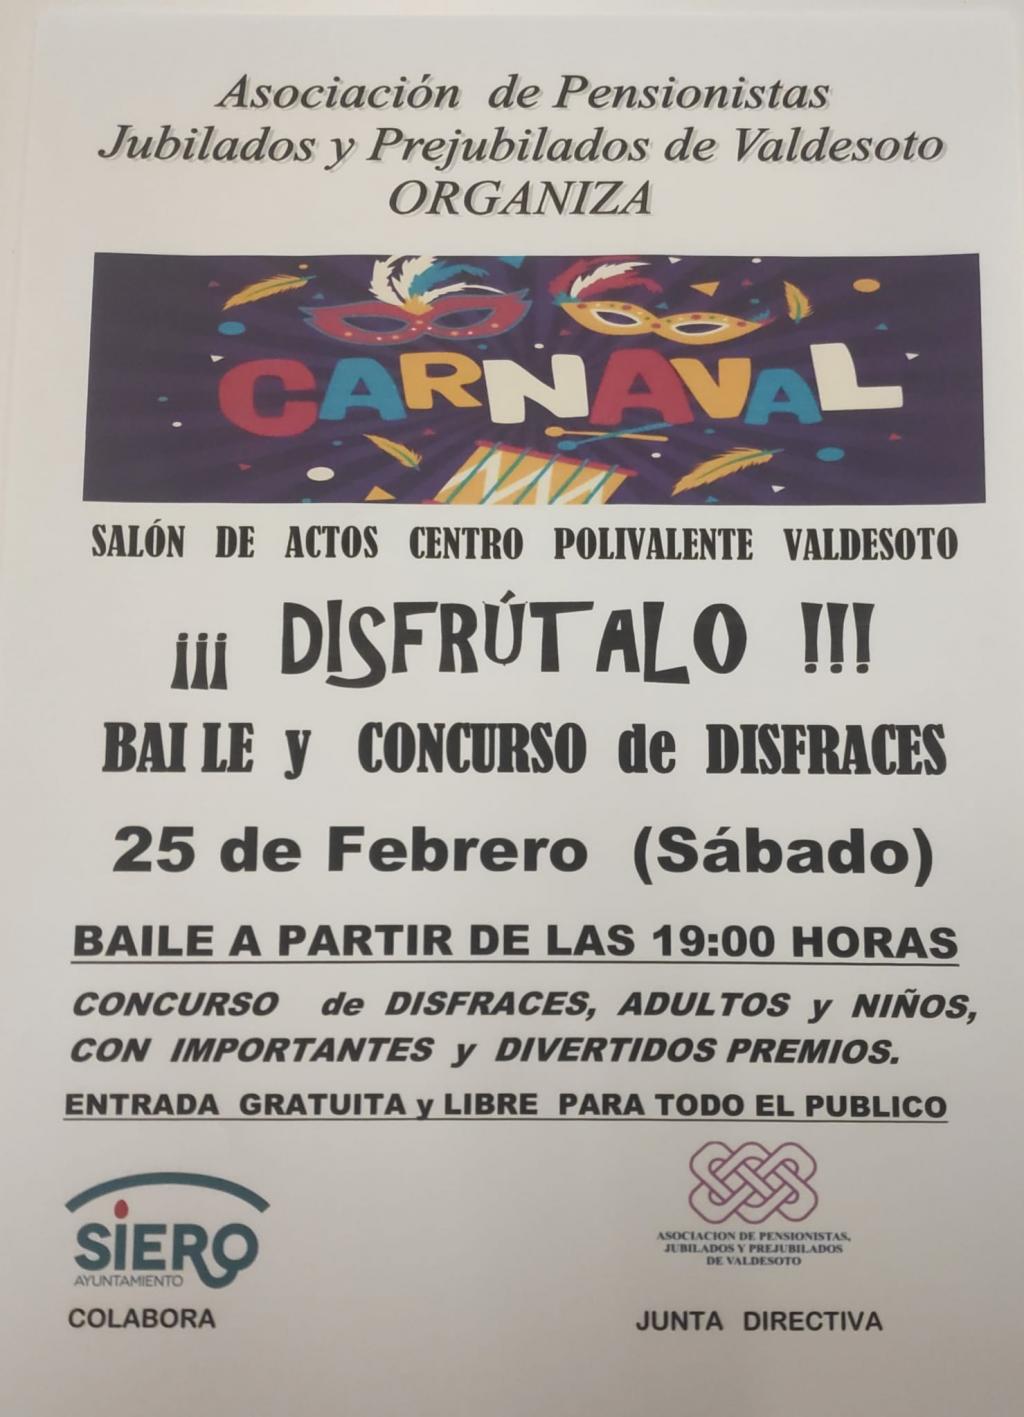 El Tapin - La Asociación de Pensionistas, Jubilados y Prejubilados de Valdesoto celebrará Carnaval el 25 de febrero